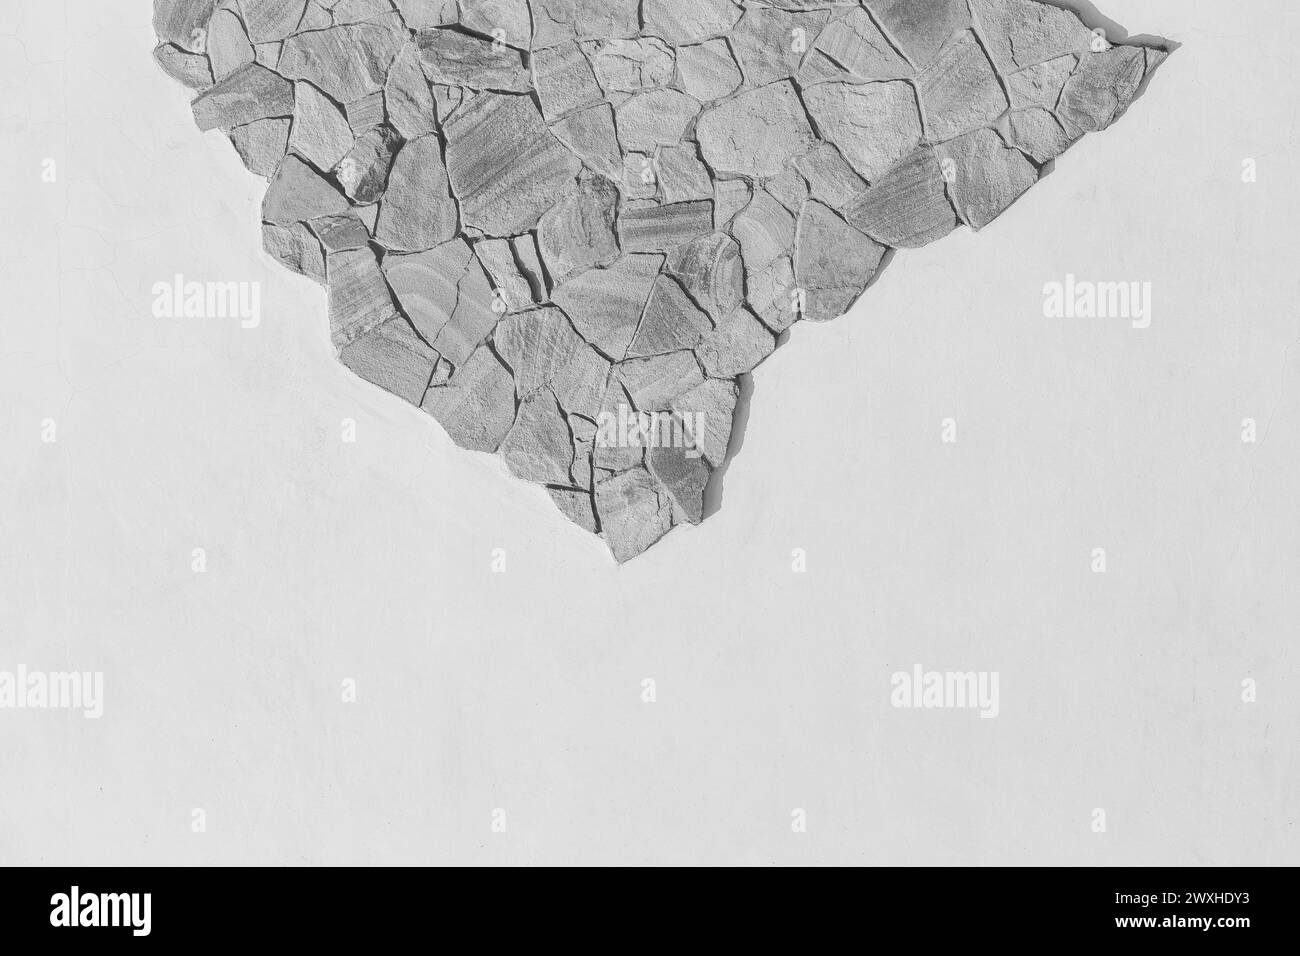 Échantillon de pierre rugueux de roche de montagne solide objet blanc gris clair motif de mur fond vide espace vide façade abstraite. Banque D'Images